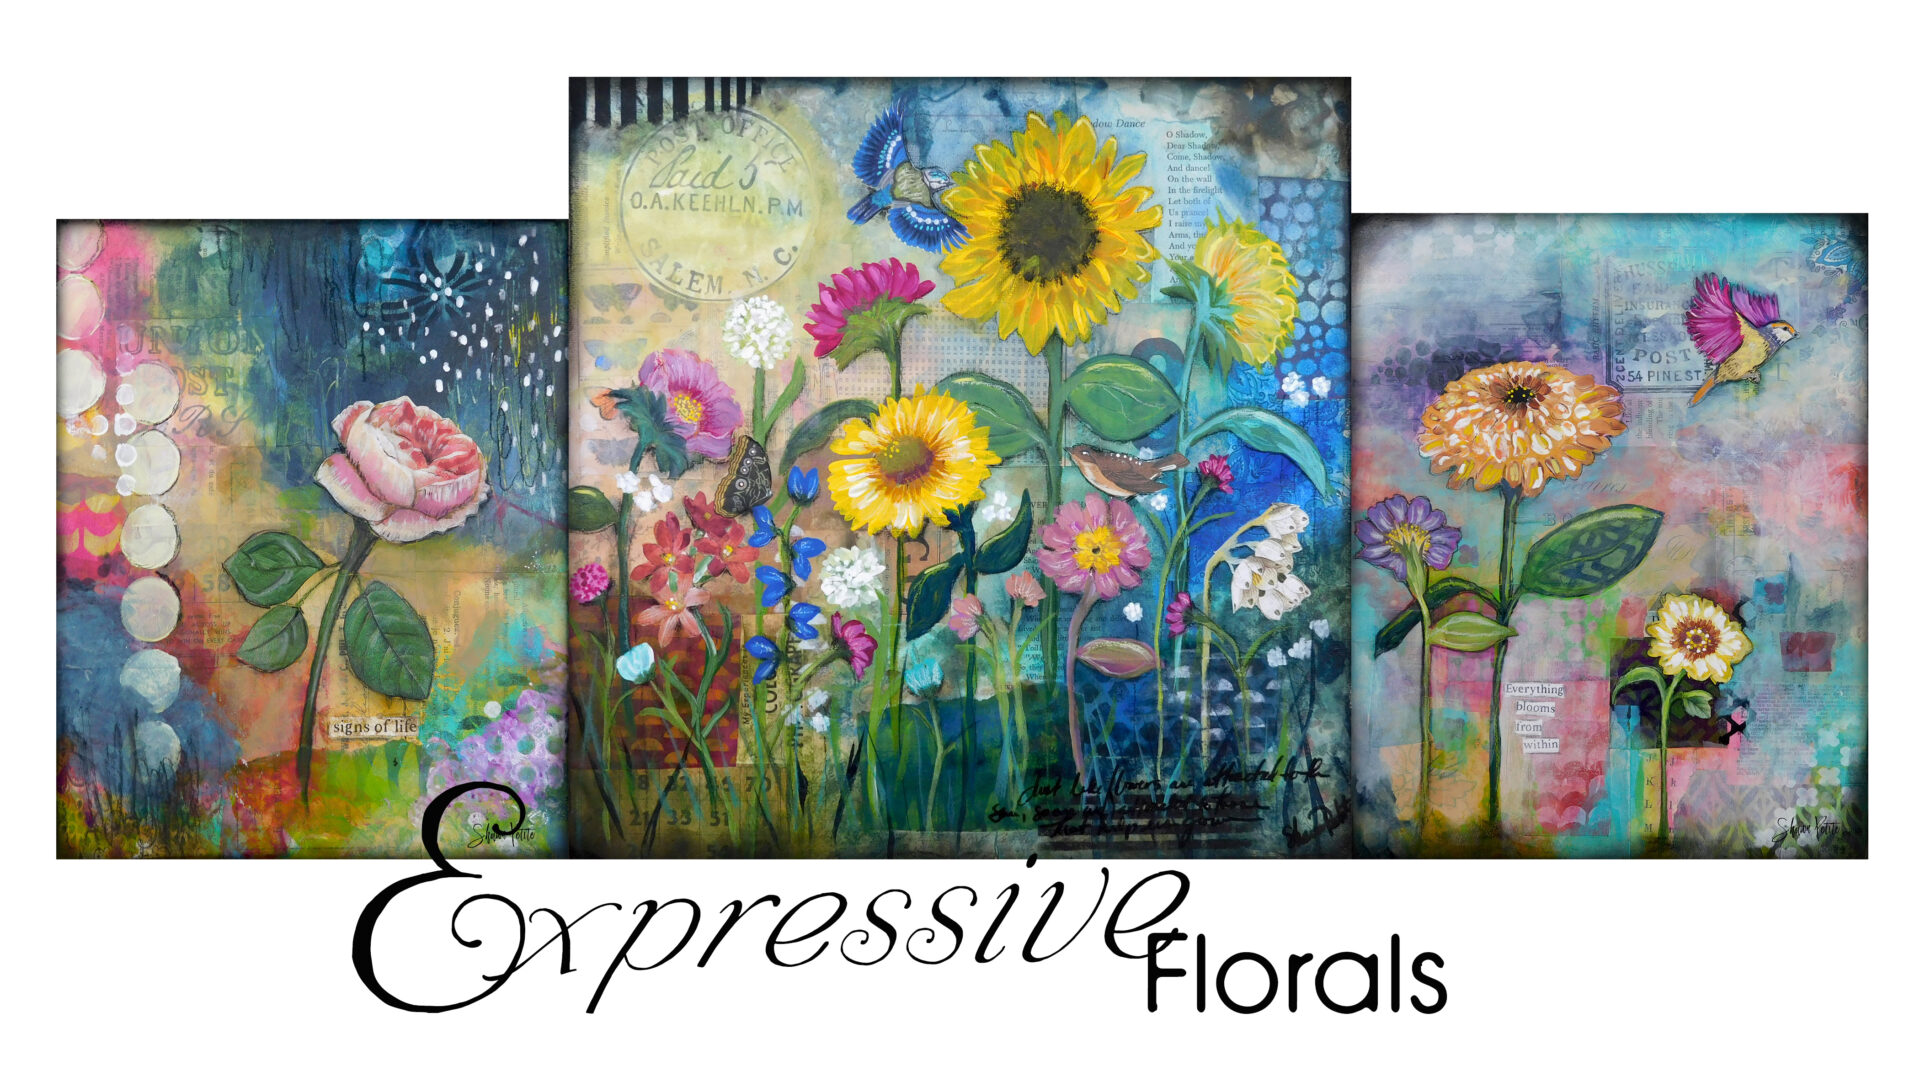 Colorful floral banner for Expressive Florals workshop